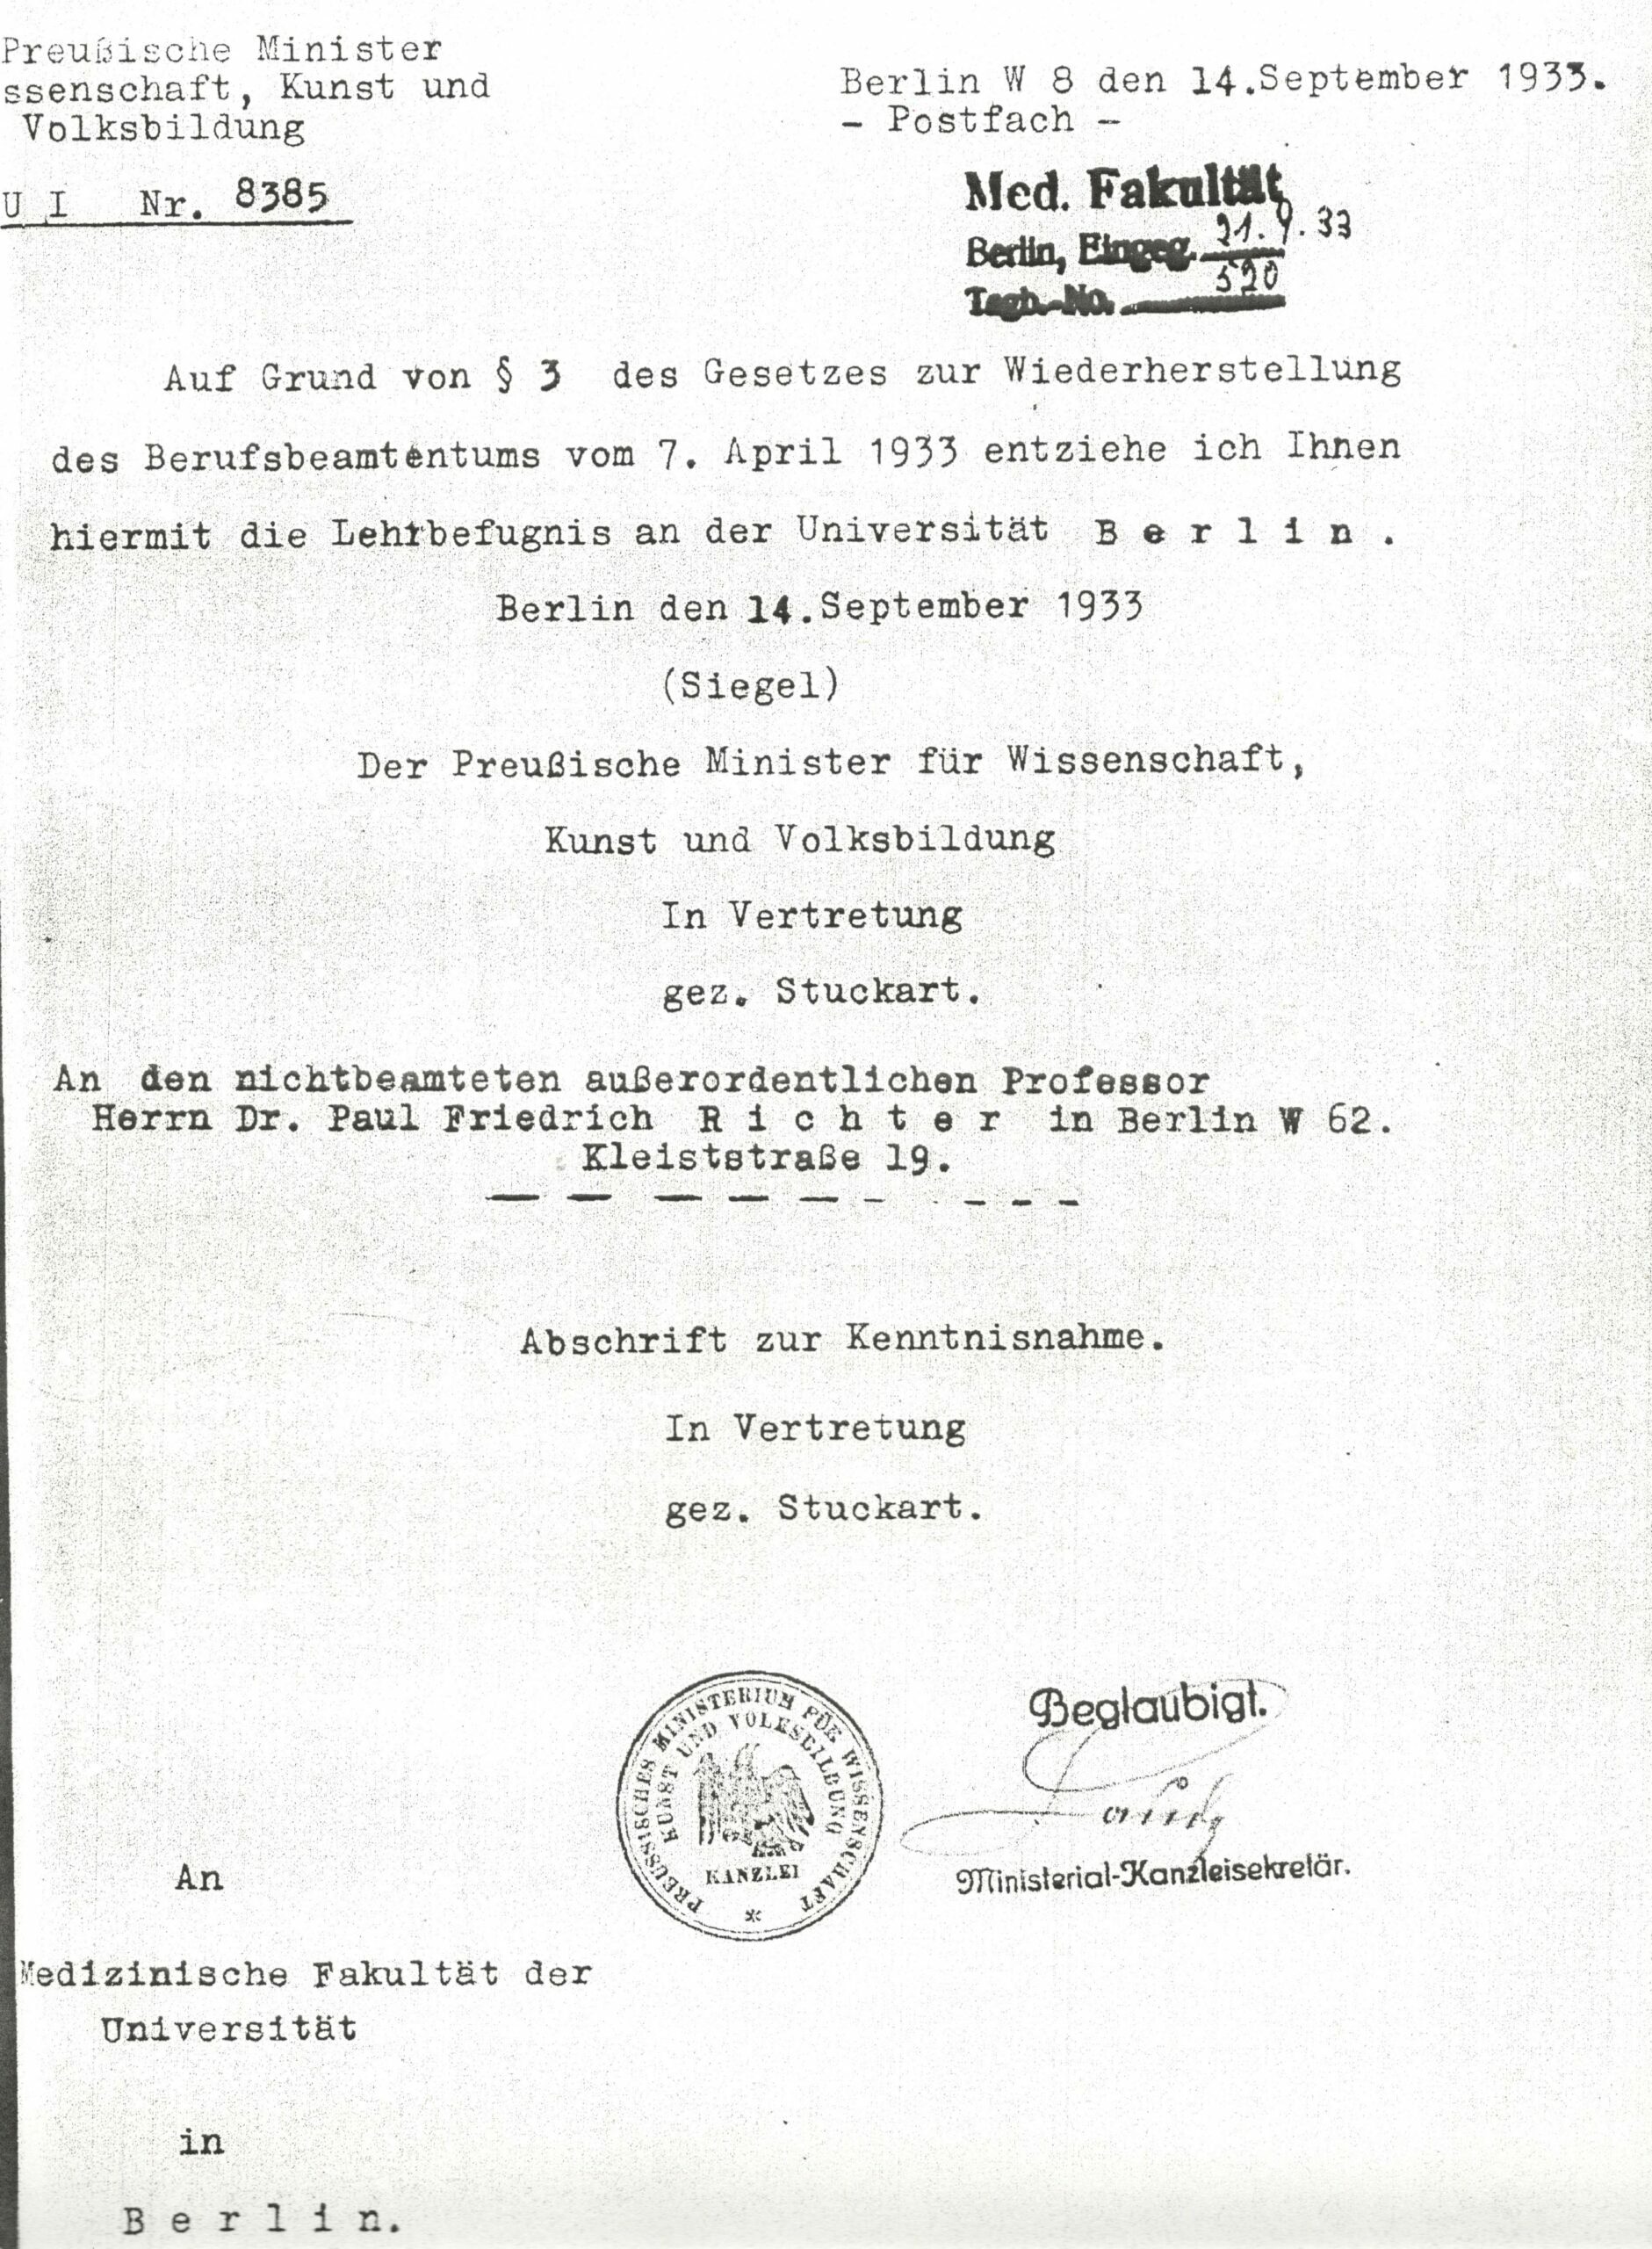 Entzug der Lehrbefugnis 1933, <br> HUB Arch Med Fak 1478 Bl 129